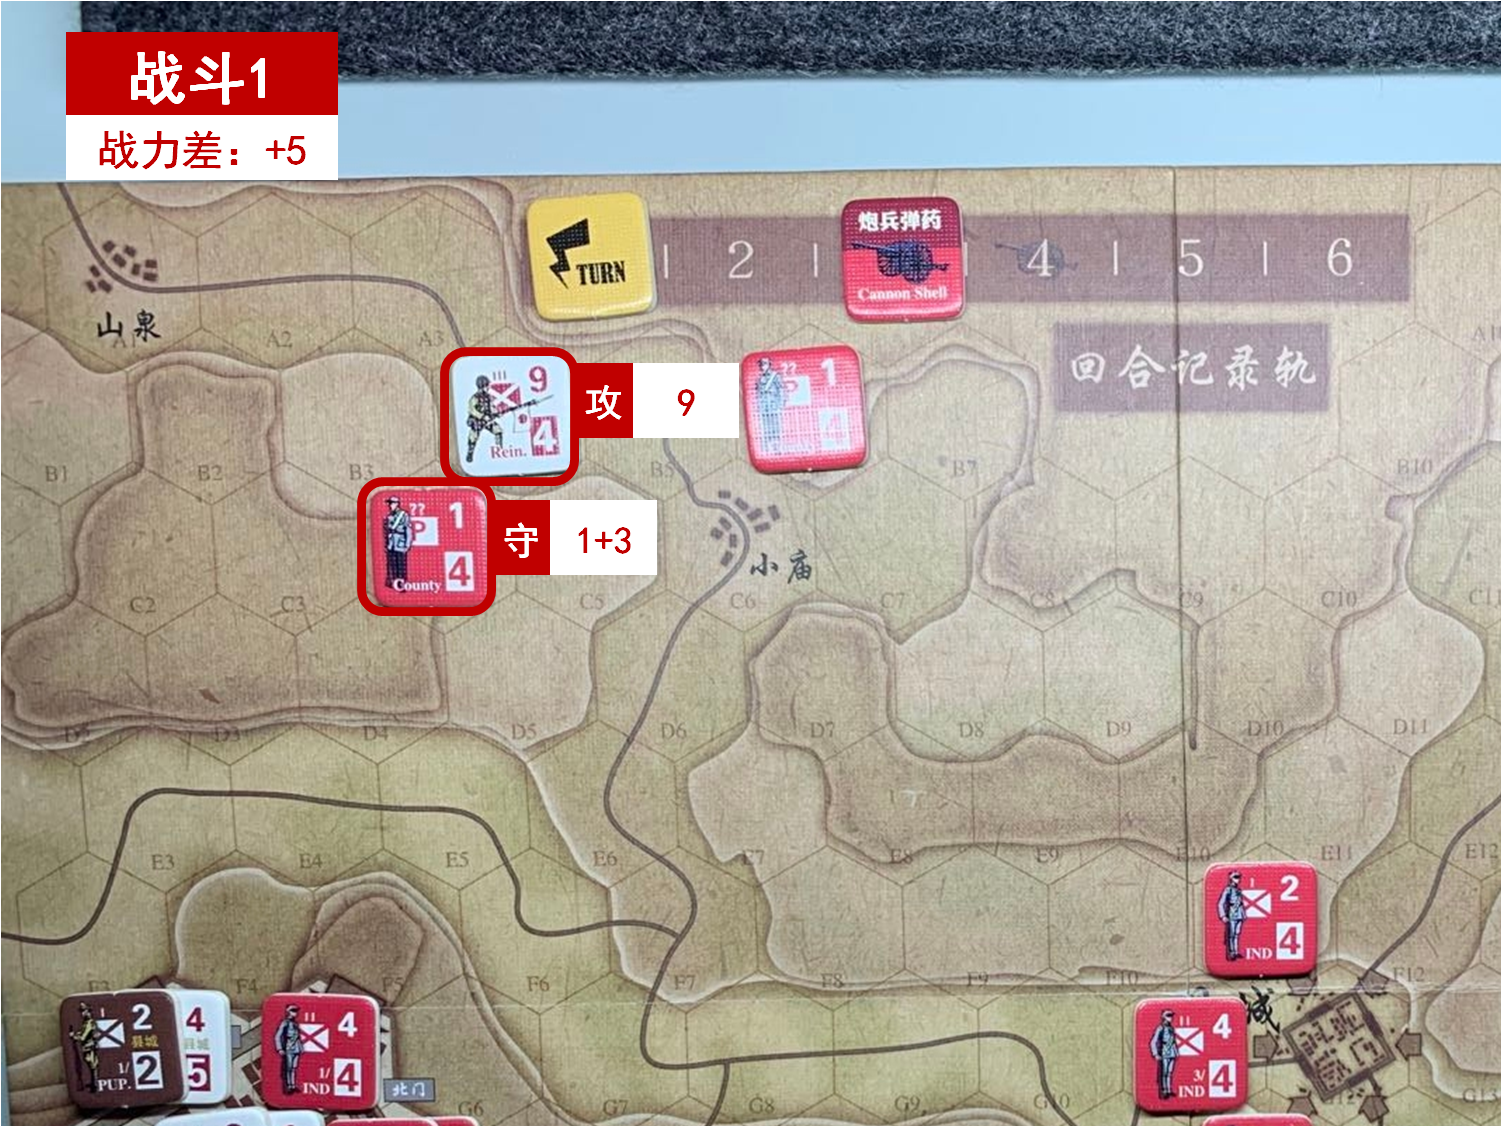 第一回合 日方戰鬥階段 戰鬥1 戰鬥力差值